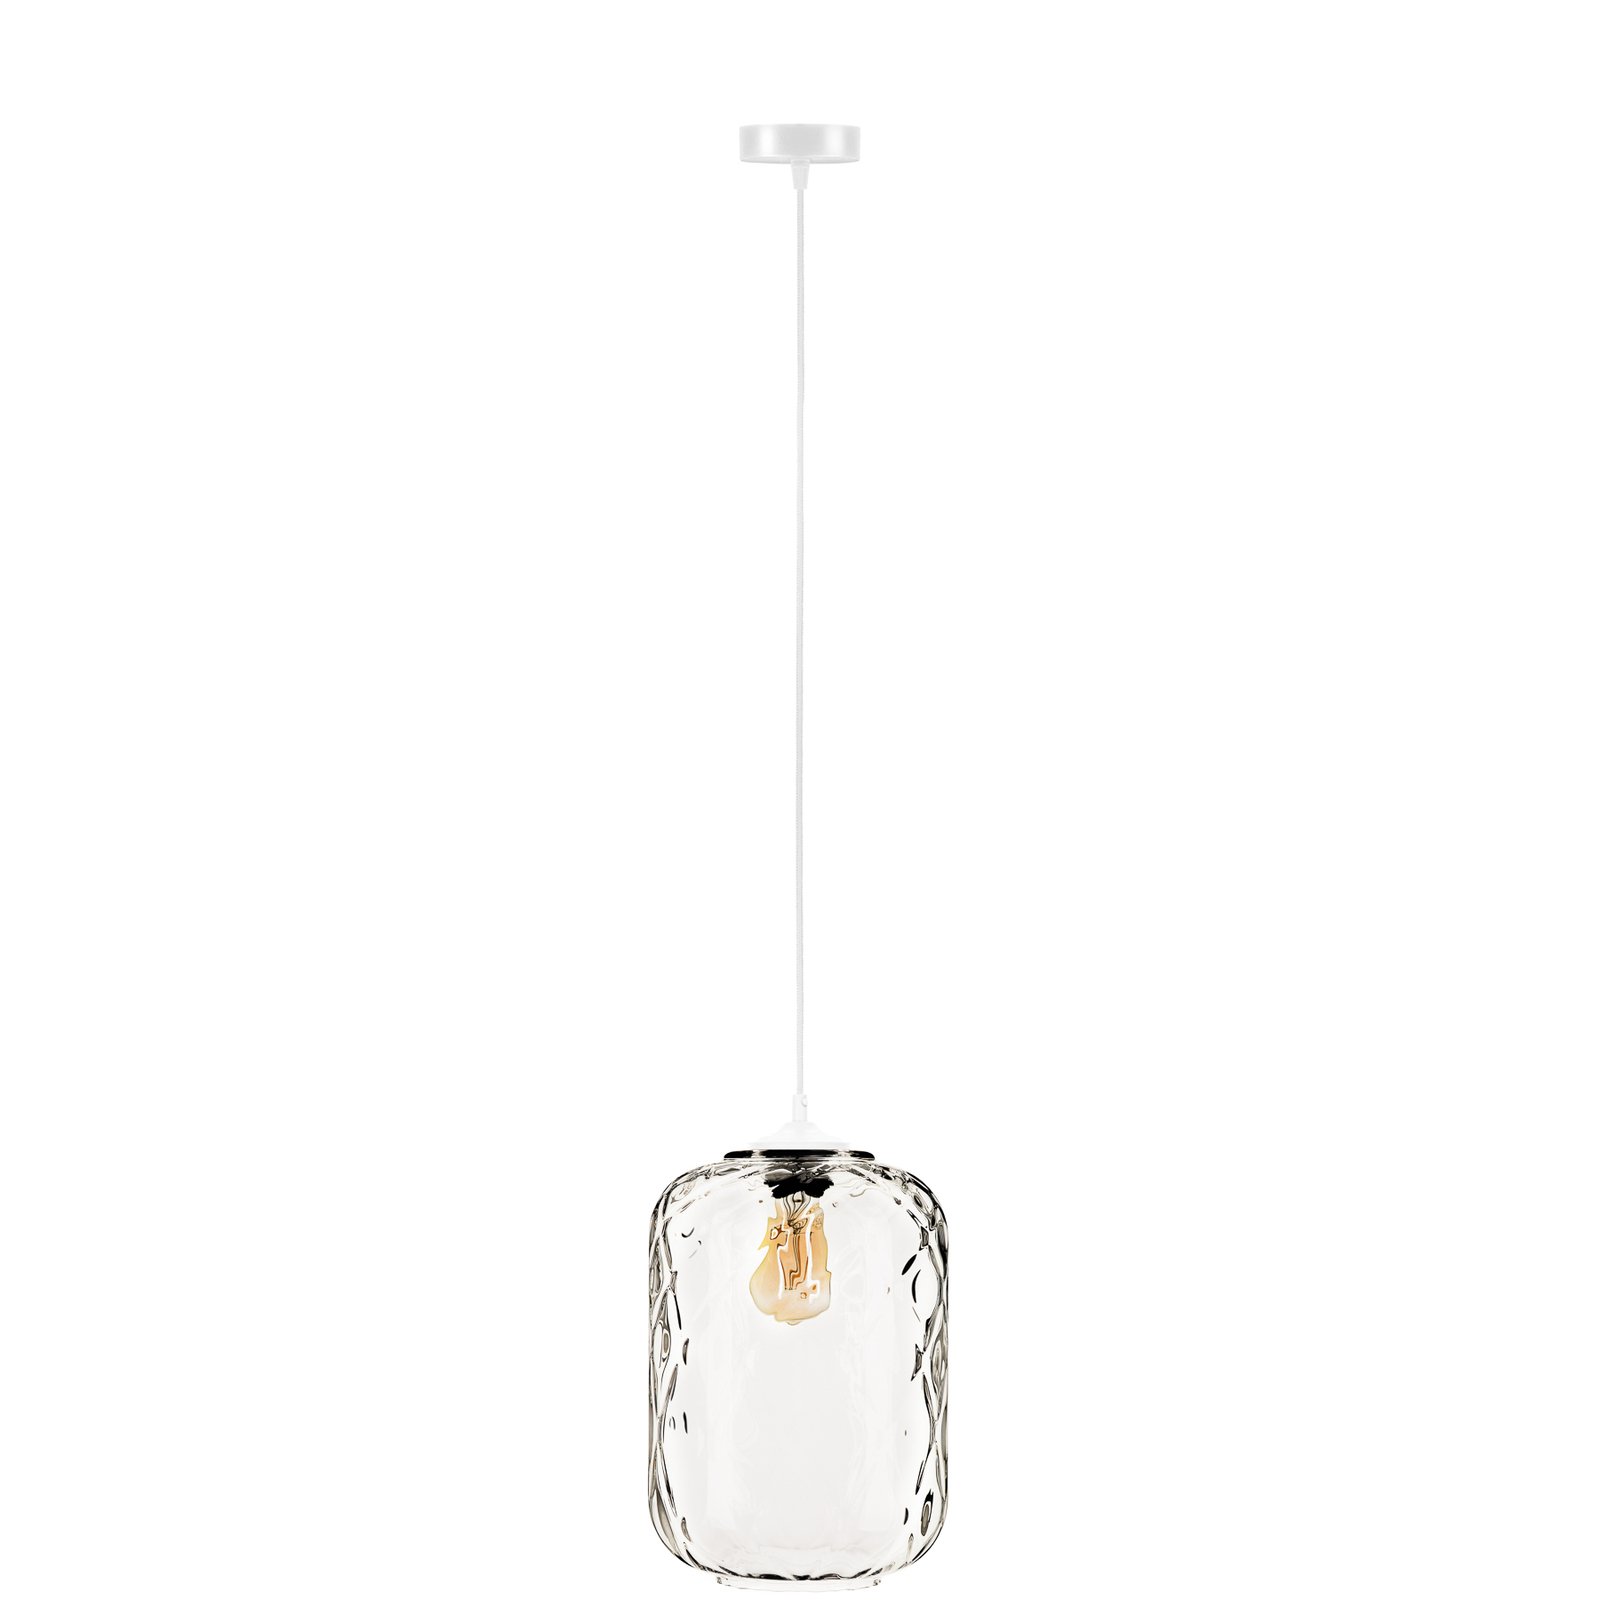 Tezeusz hanglamp met heldere glazen kap Ø 24cm